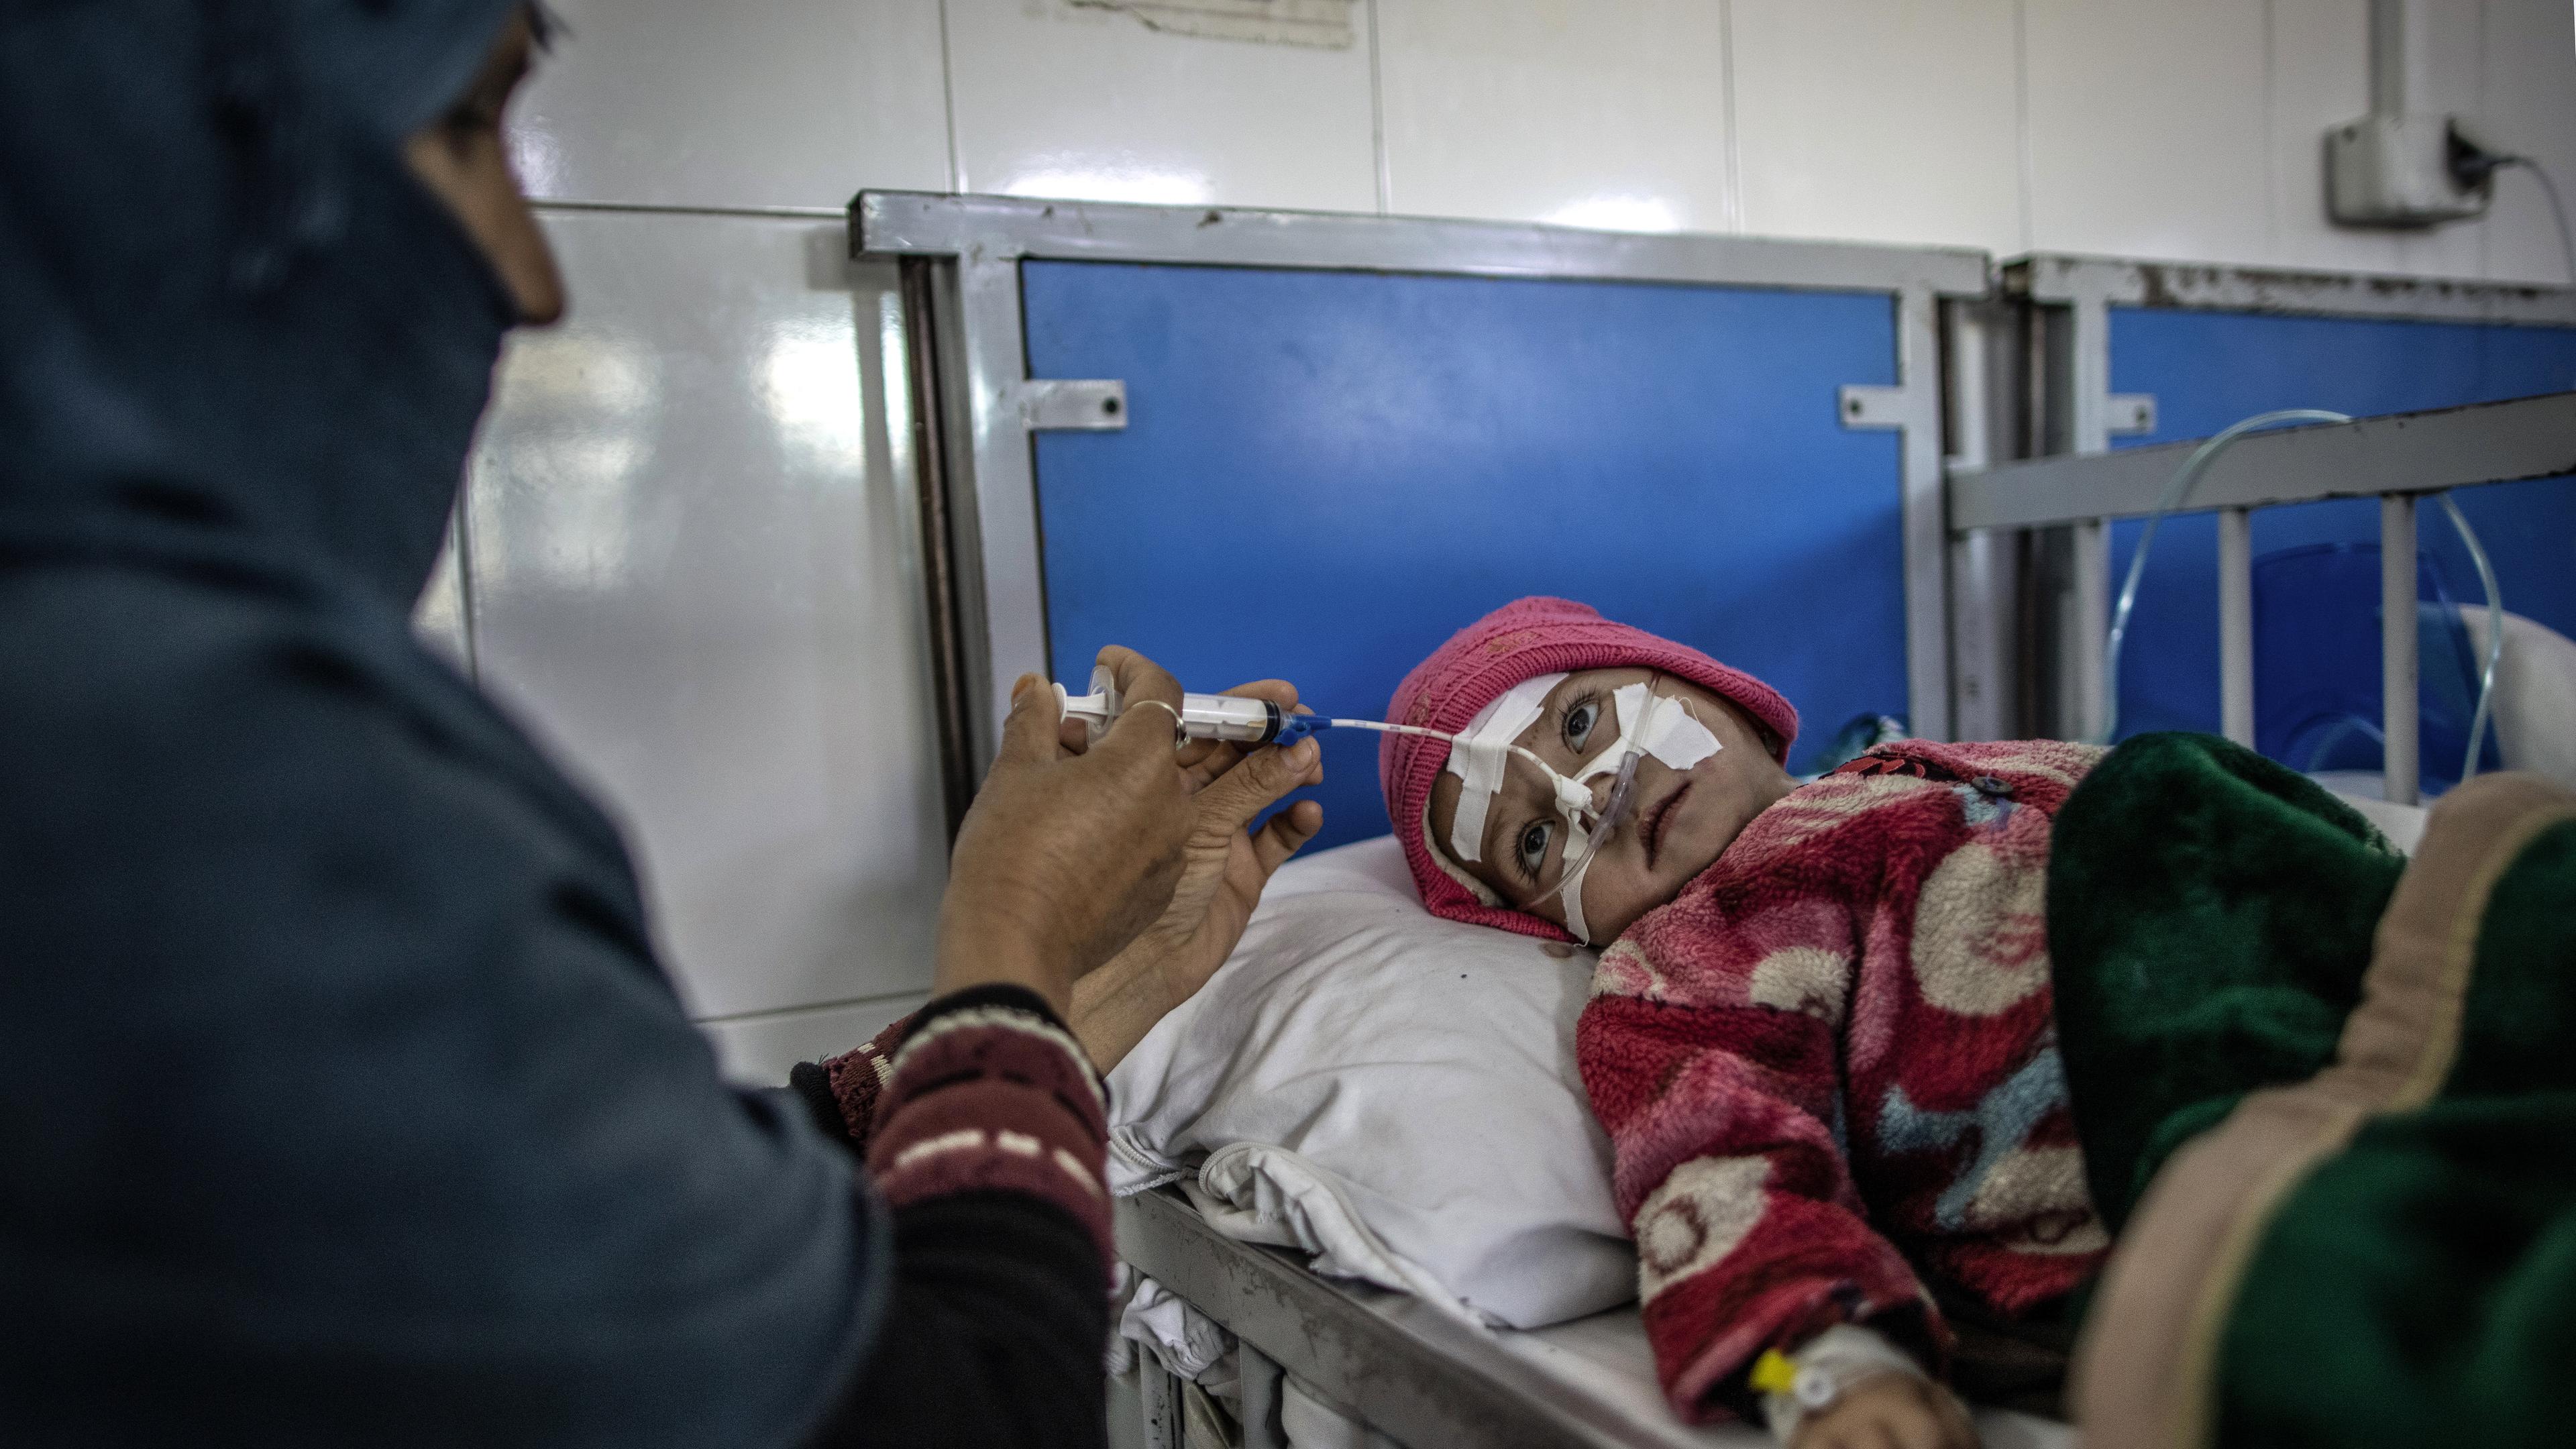 Eine afghanische Mutter füttert ihren Säugling in einer Station für schwere Unterernährung in einem Krankenhaus in Kabul, aufgenommen am 14.11.2022